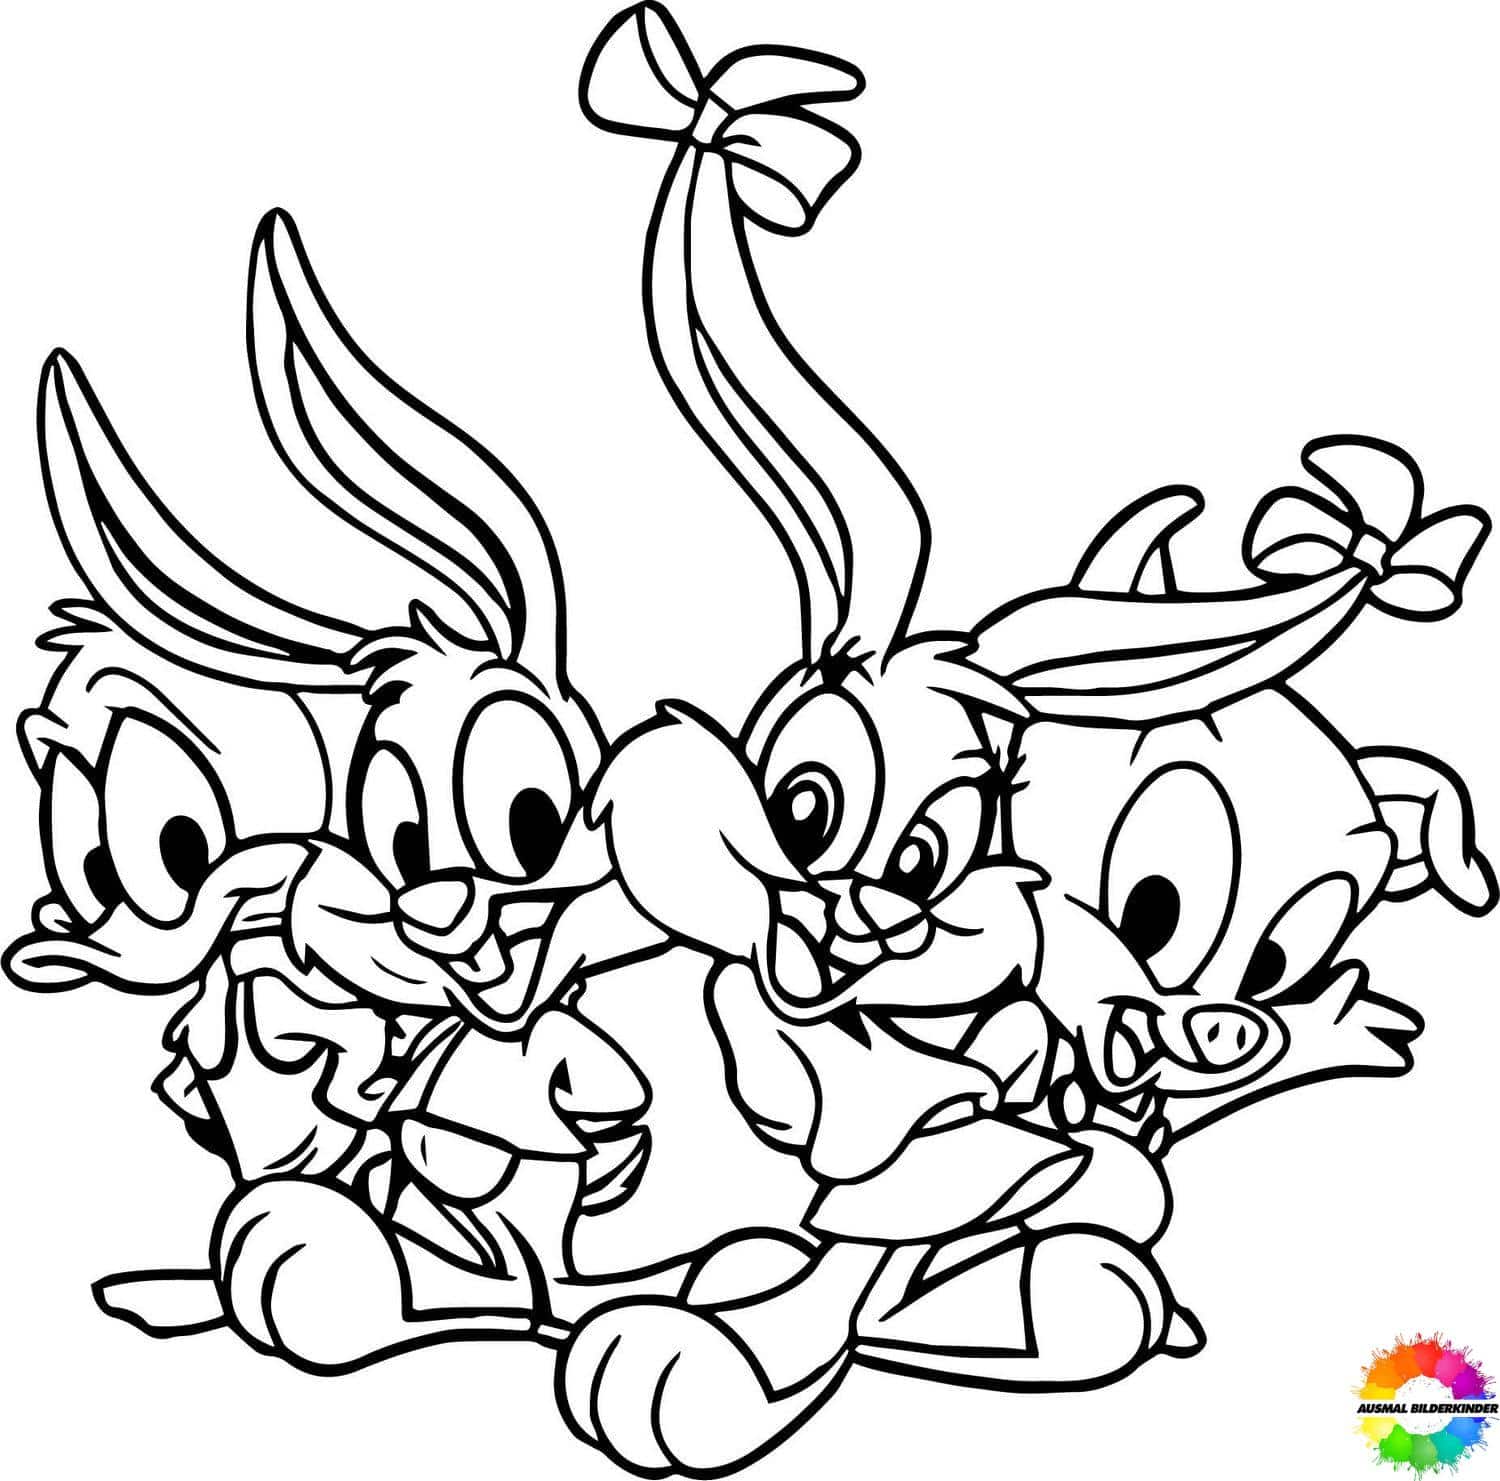 Looney-Tunes-ausmalbilder-ausmalbilderkinder-de-19